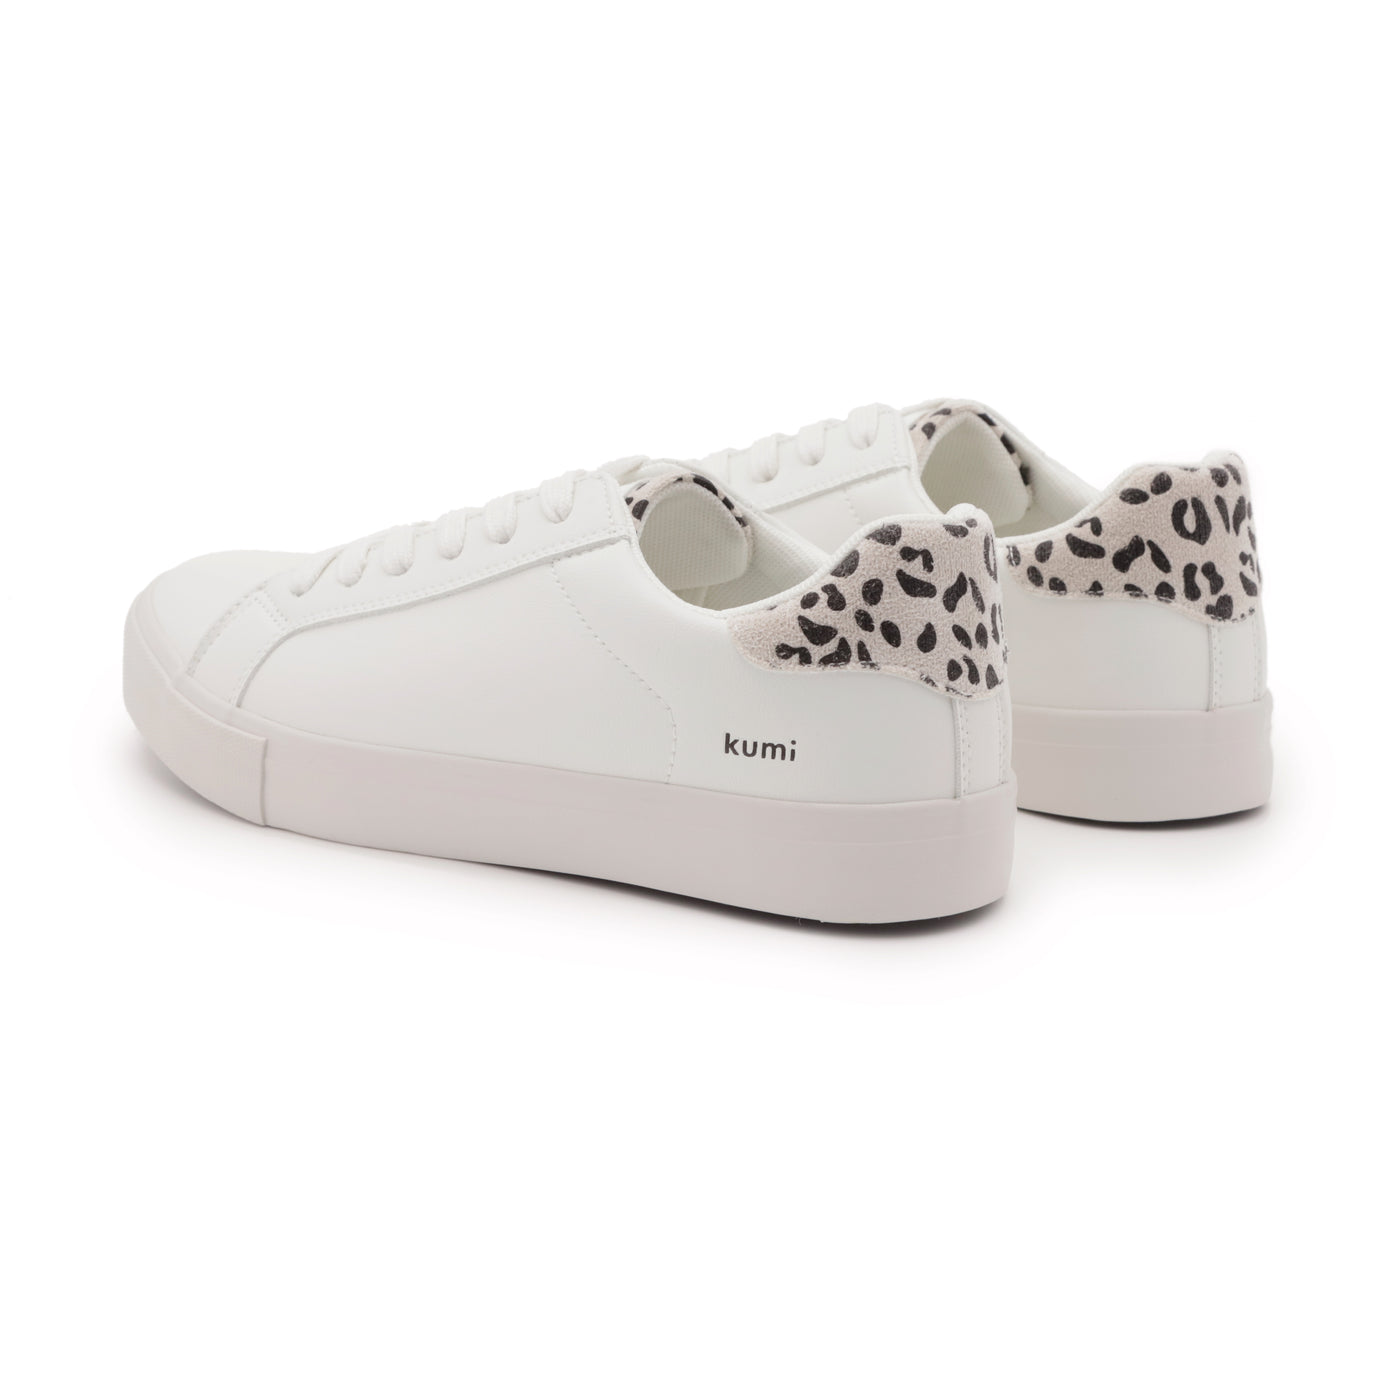 Retro sneakers White/Leopard